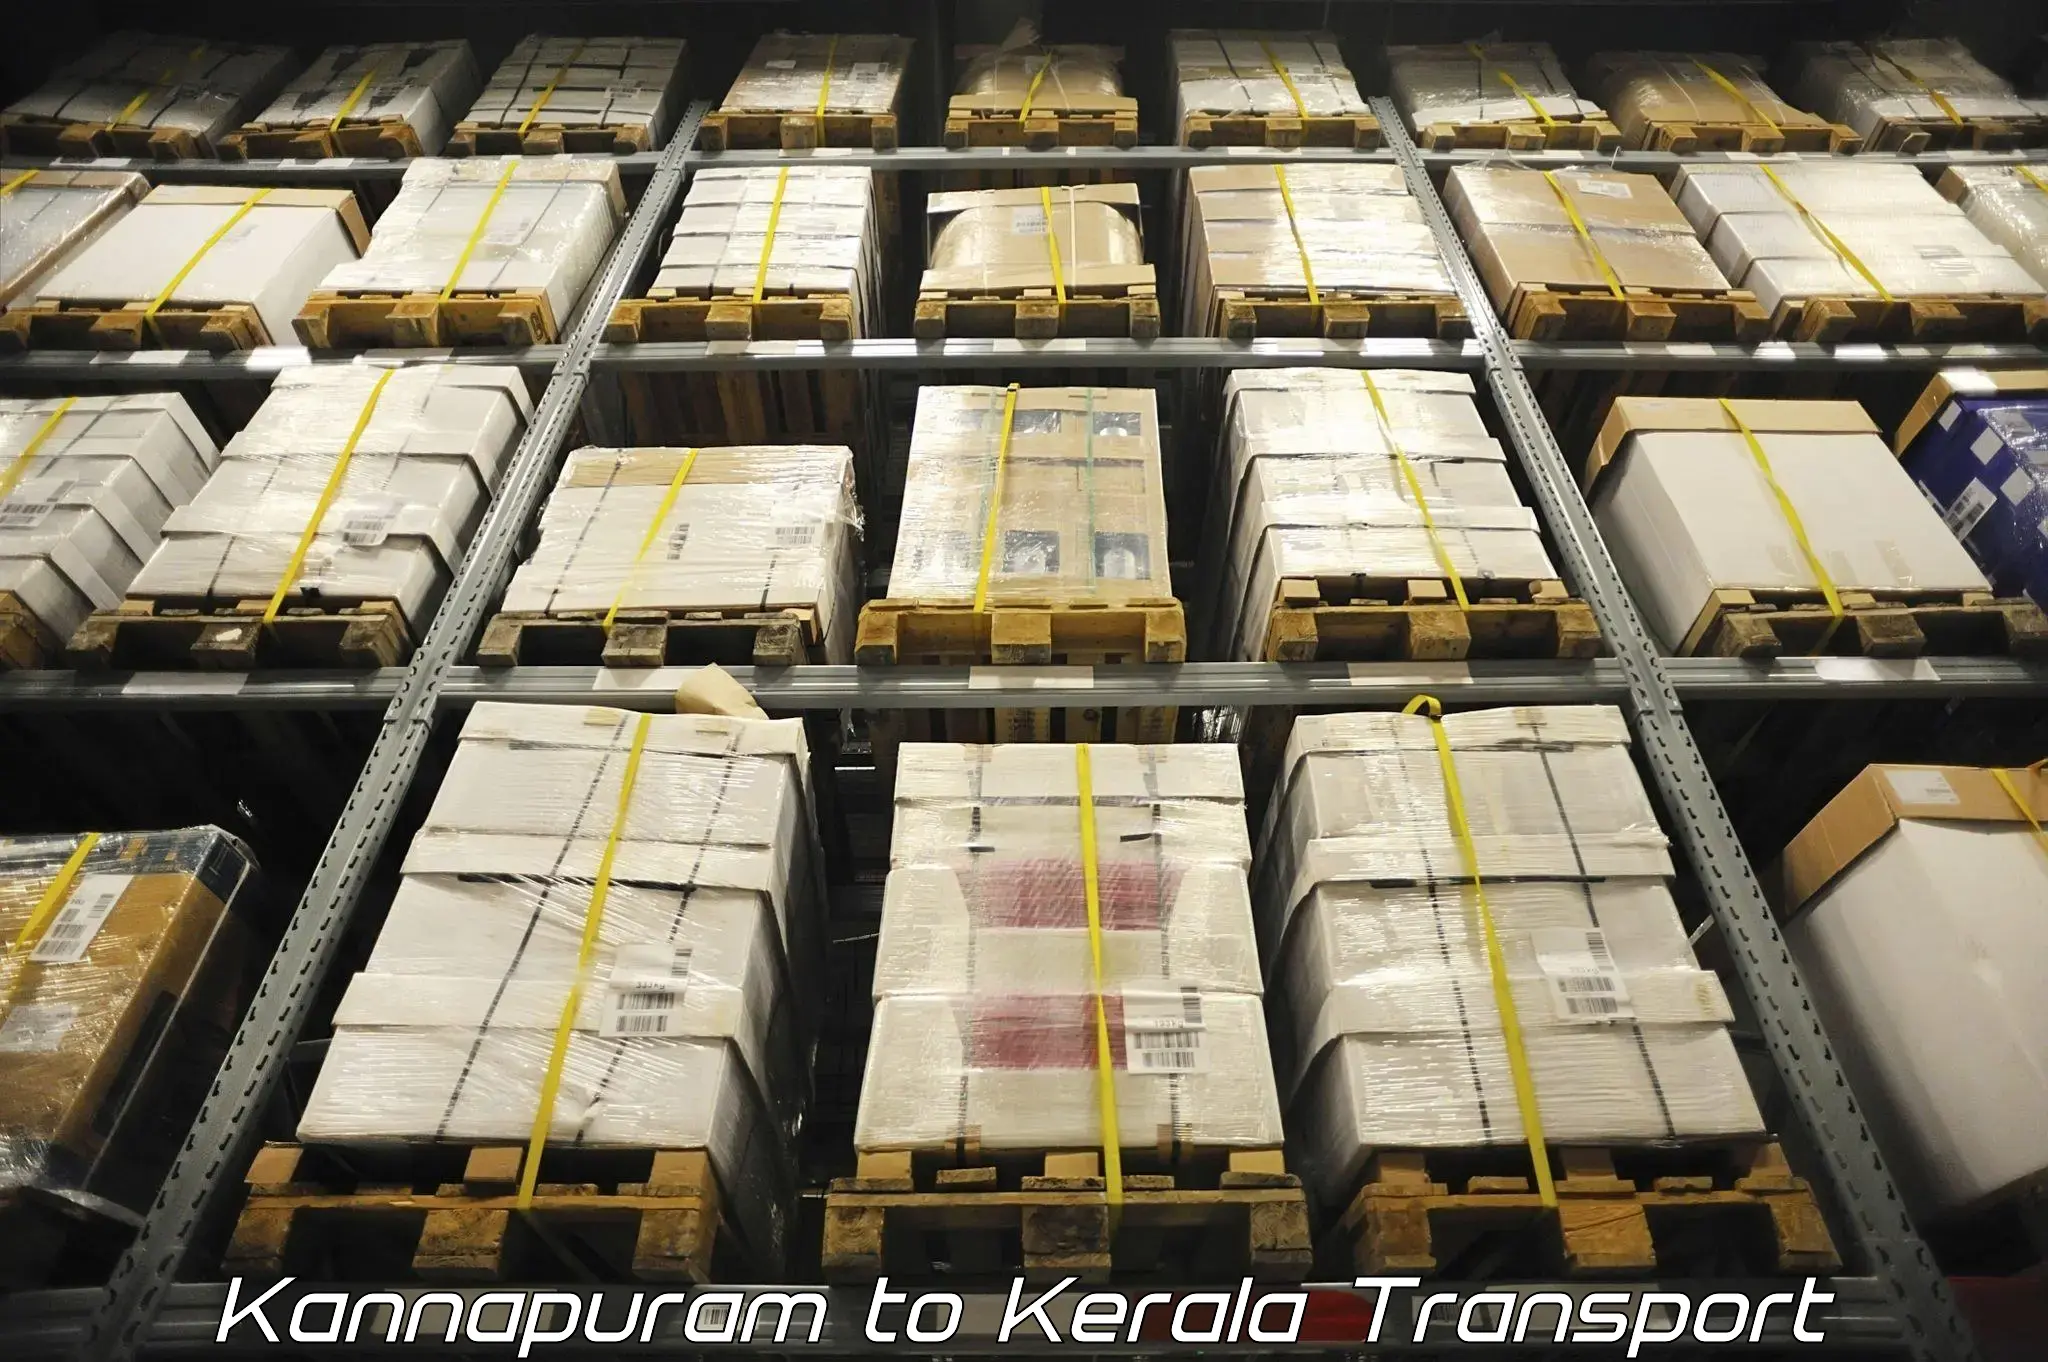 Transport in sharing Kannapuram to Chengannur